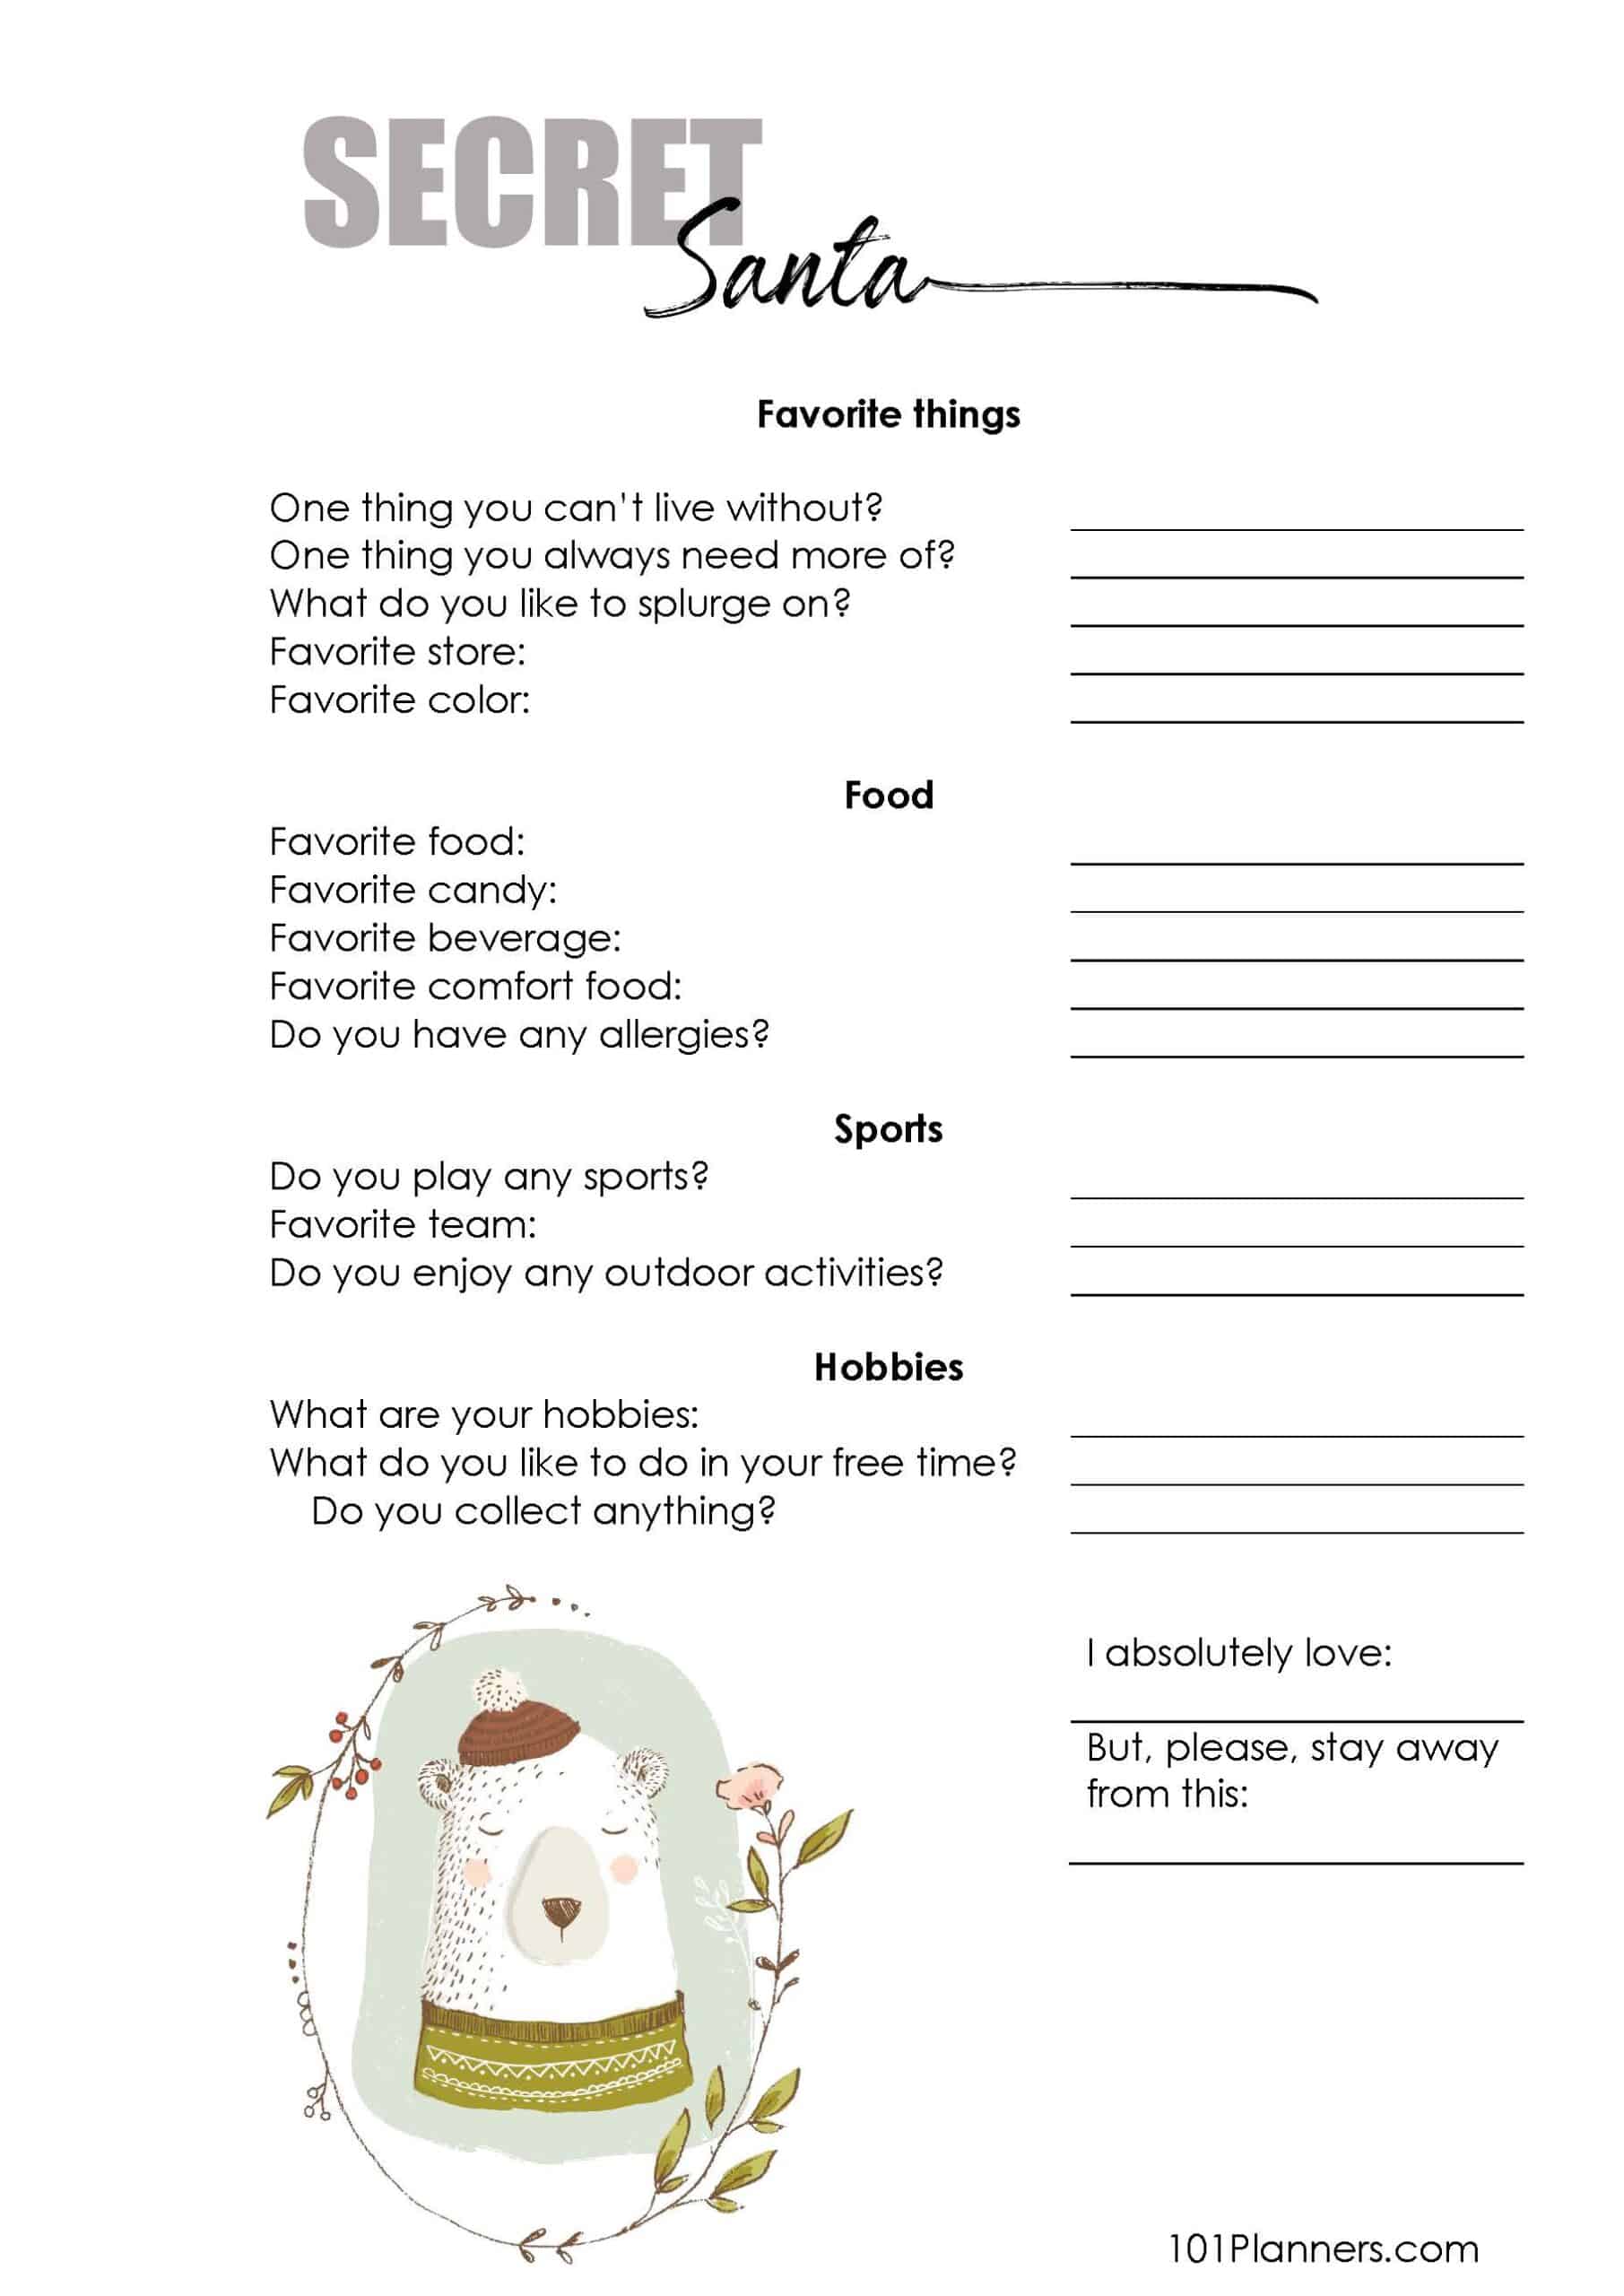 printable-secret-santa-questionnaire-word-doc-printable-templates